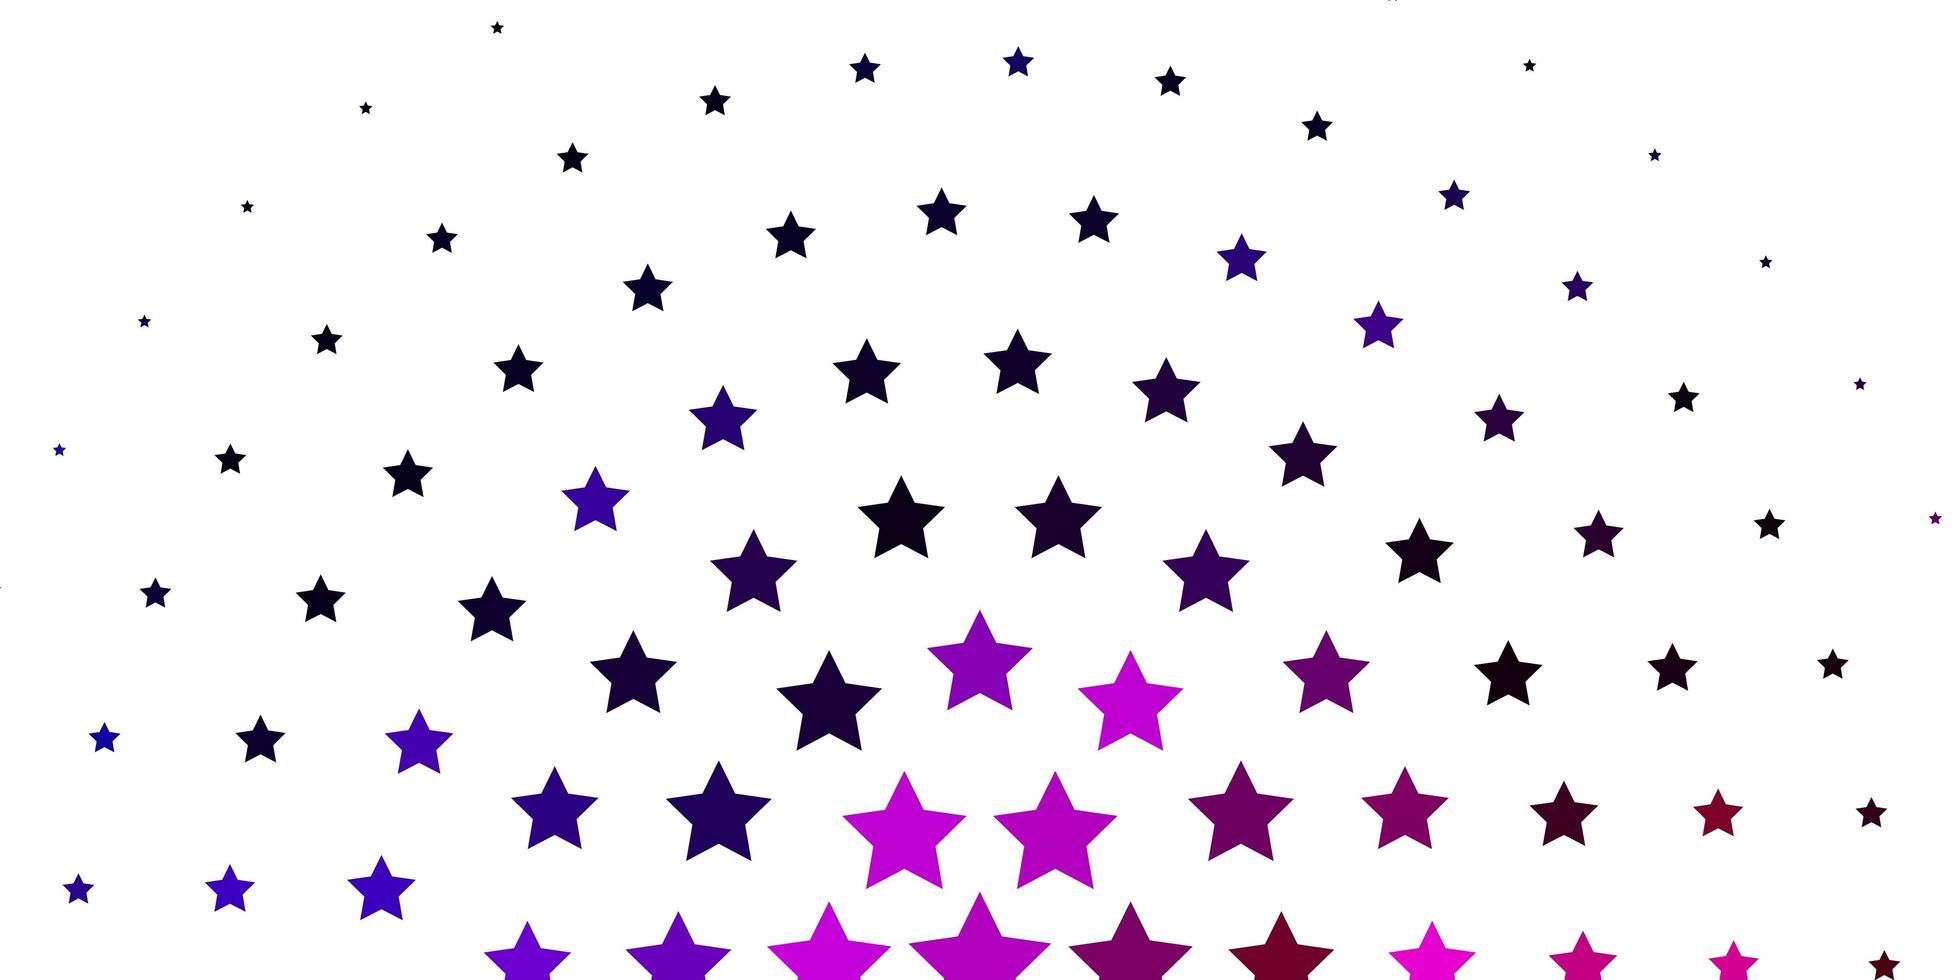 layout de vetor de luz roxa, rosa com estrelas brilhantes. ilustração colorida em estilo abstrato com estrelas gradientes. design para a promoção de seus negócios.